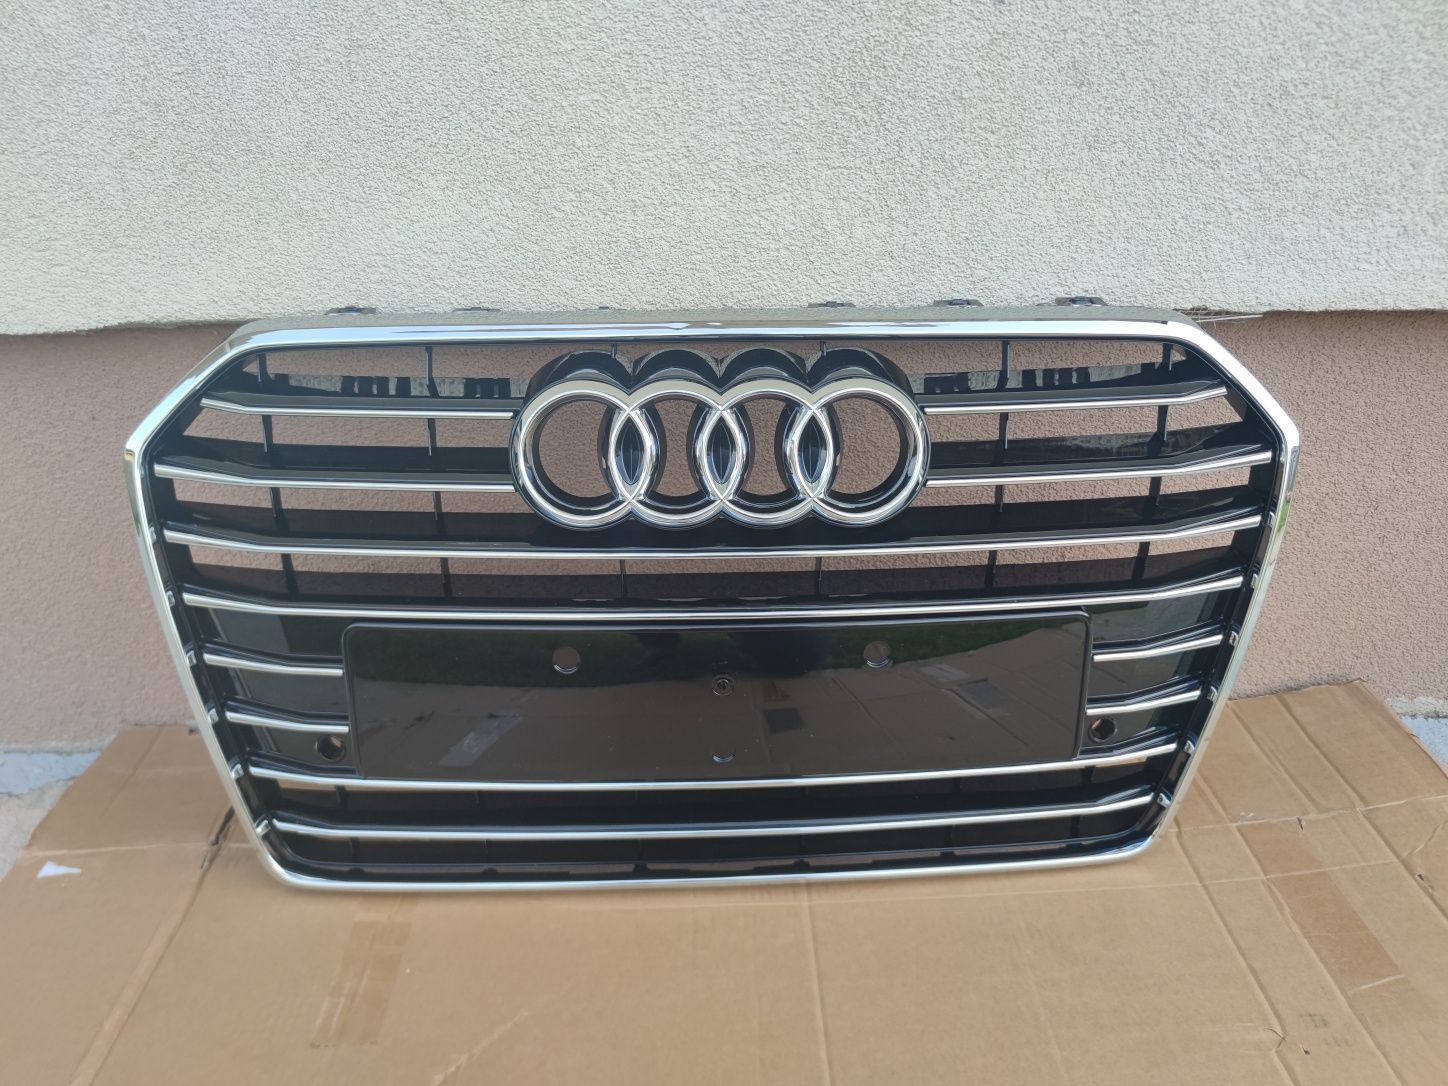 Grila Audi A6 C7 facelift 2014-2018 noua